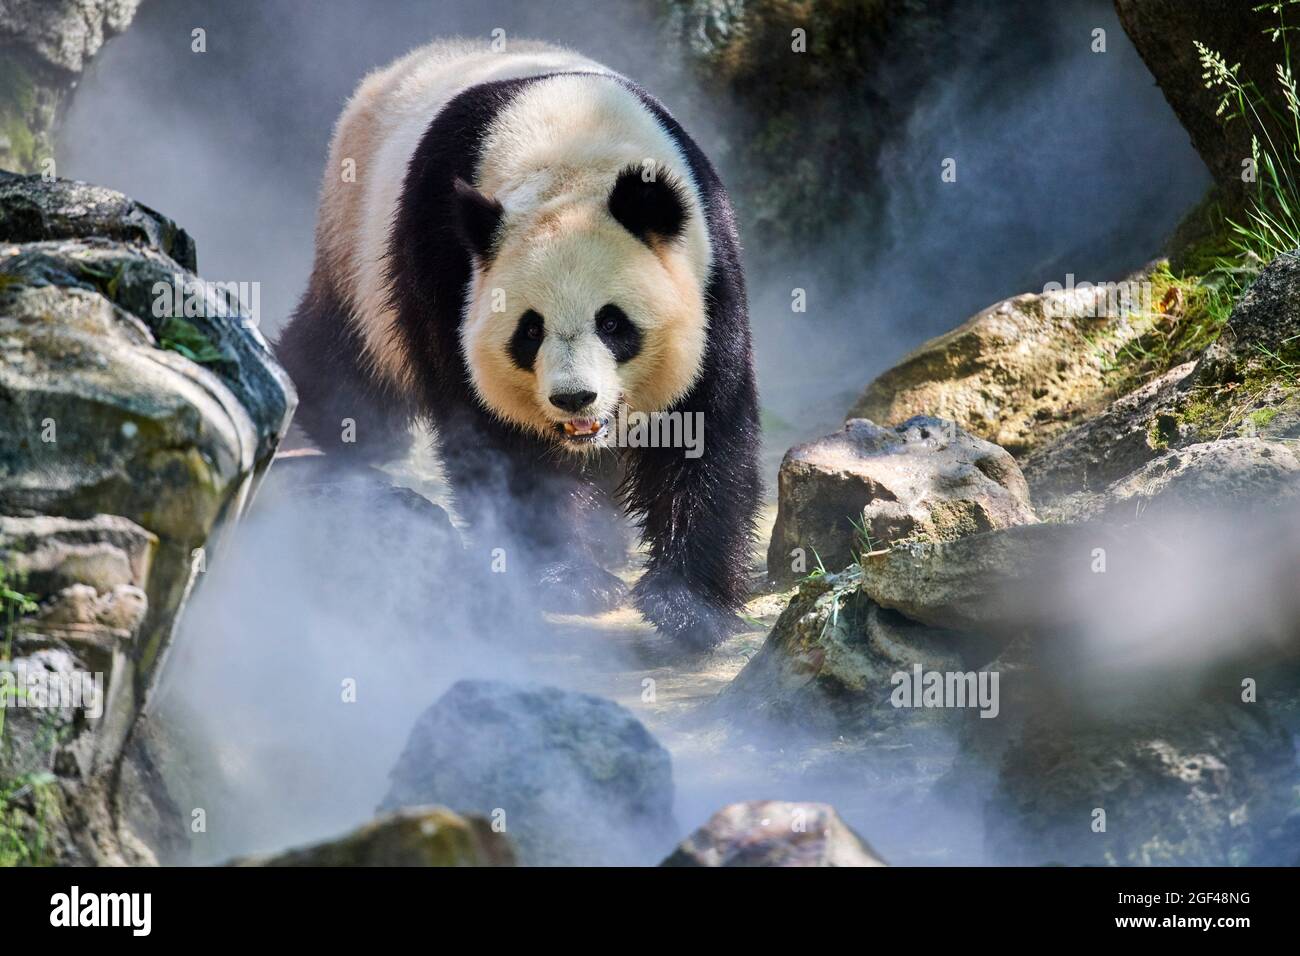 Panda géant (Ailuropoda melanoleuca) femelle Huan Huan dans son enceinte en brume, captive au zoo de Beauval, Saint Aignan sur cher, France. La brume Banque D'Images